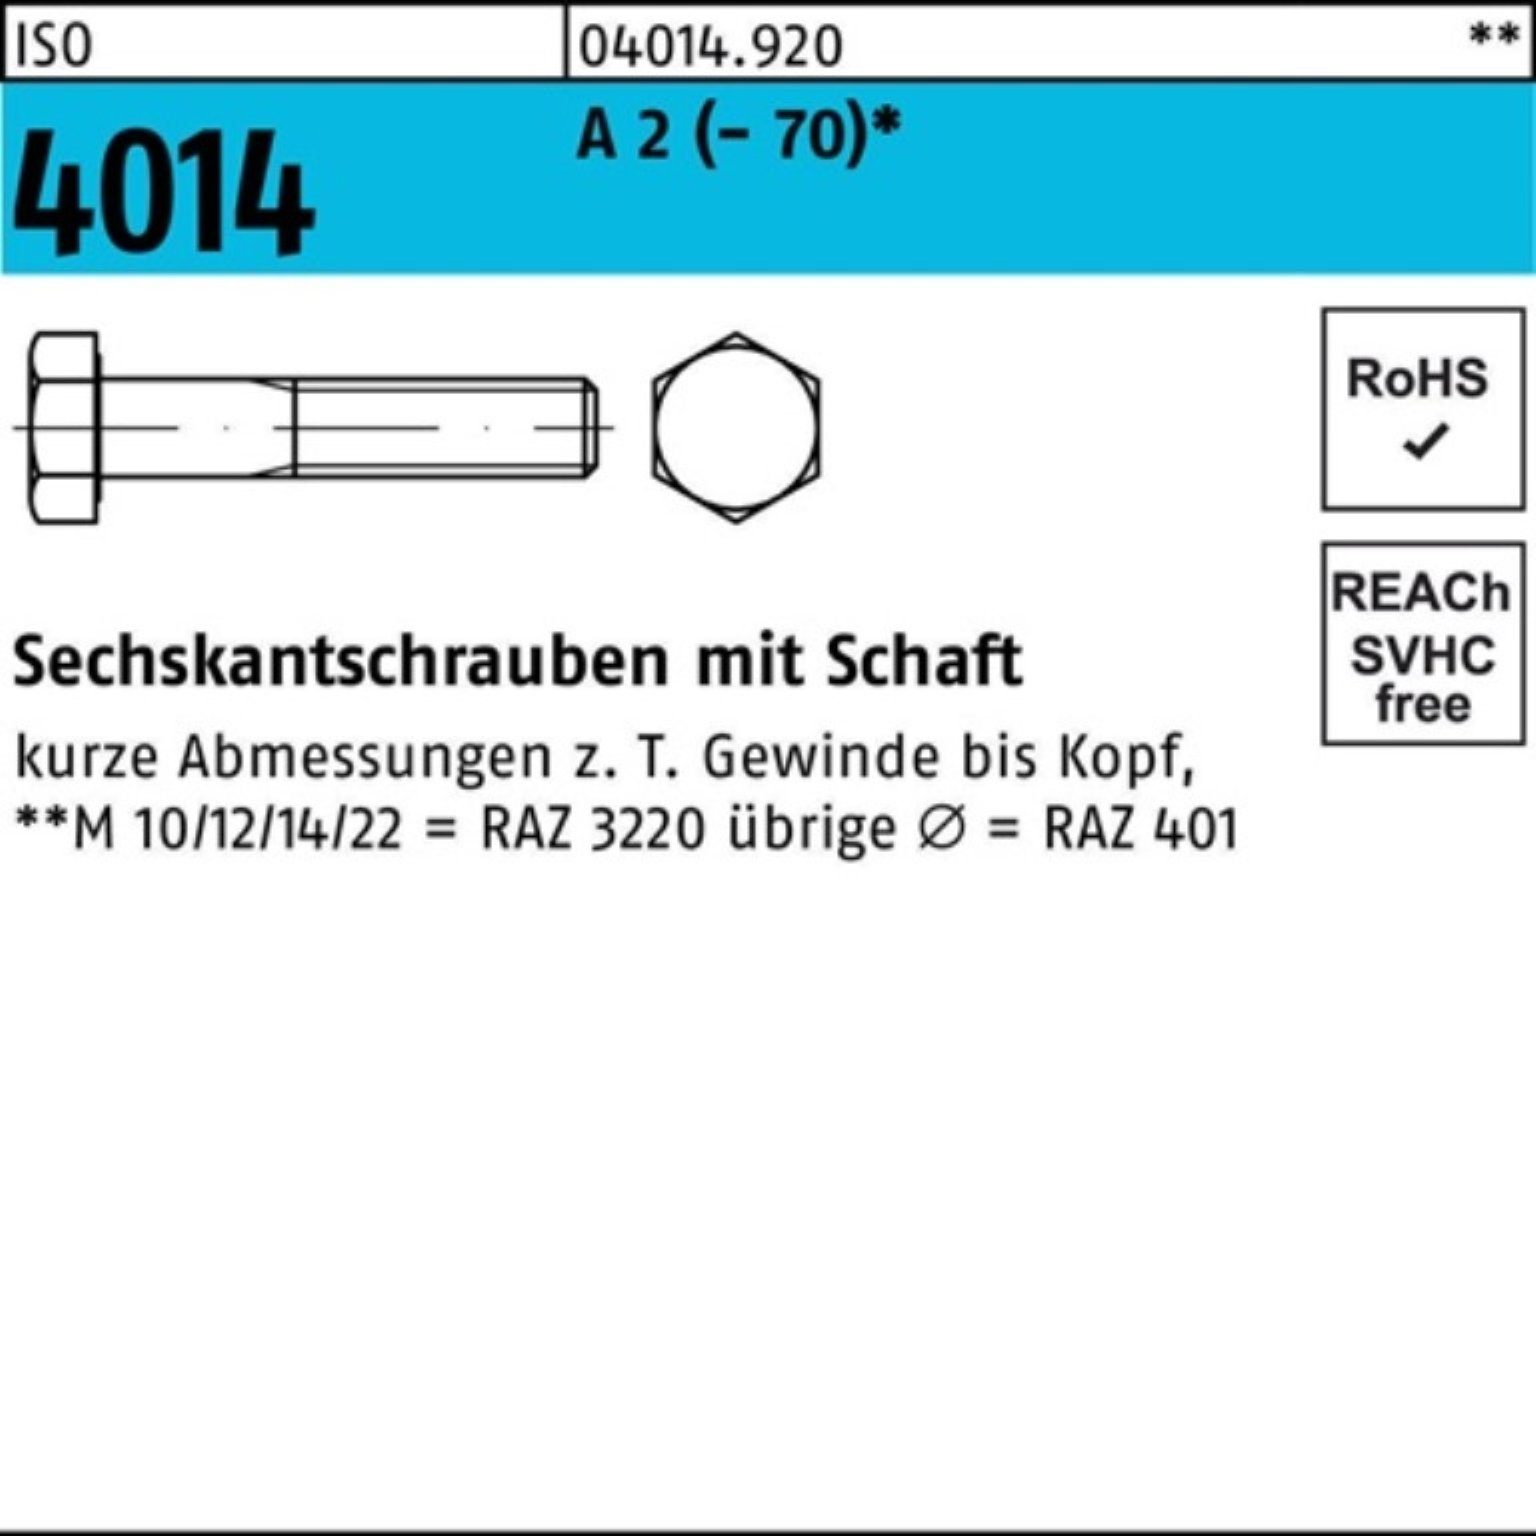 St 110 M18x Sechskantschraube Schaft 100er Bufab Sechskantschraube 4014 ISO Pack A 25 (70) 2